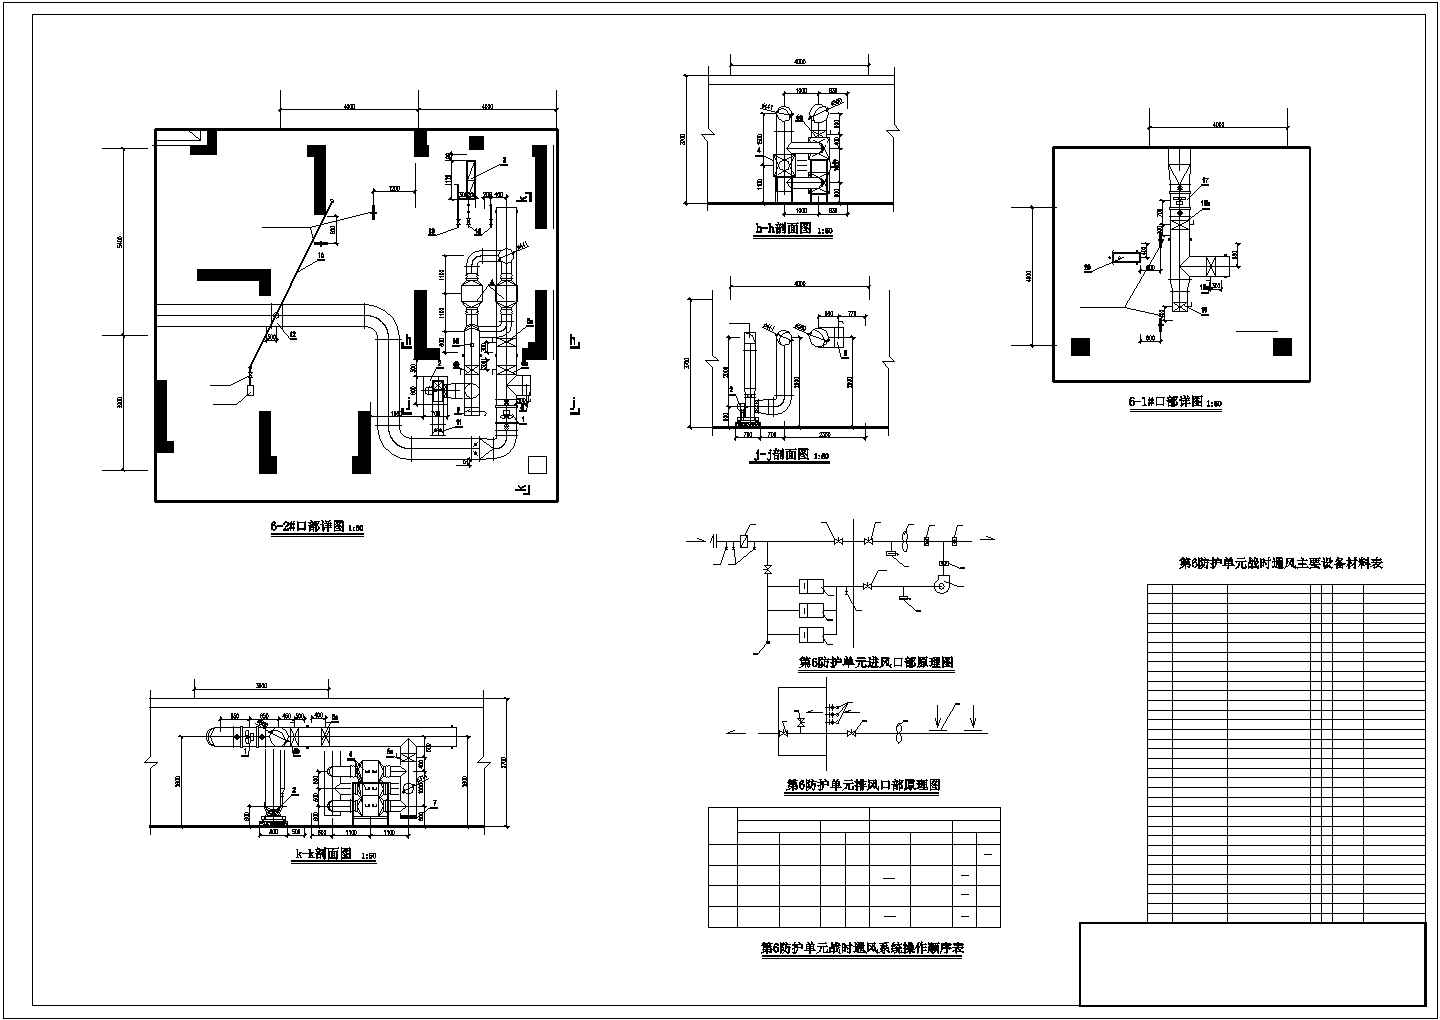 【江西】大型商办楼防空地下室通风及防排烟系统设计施工图